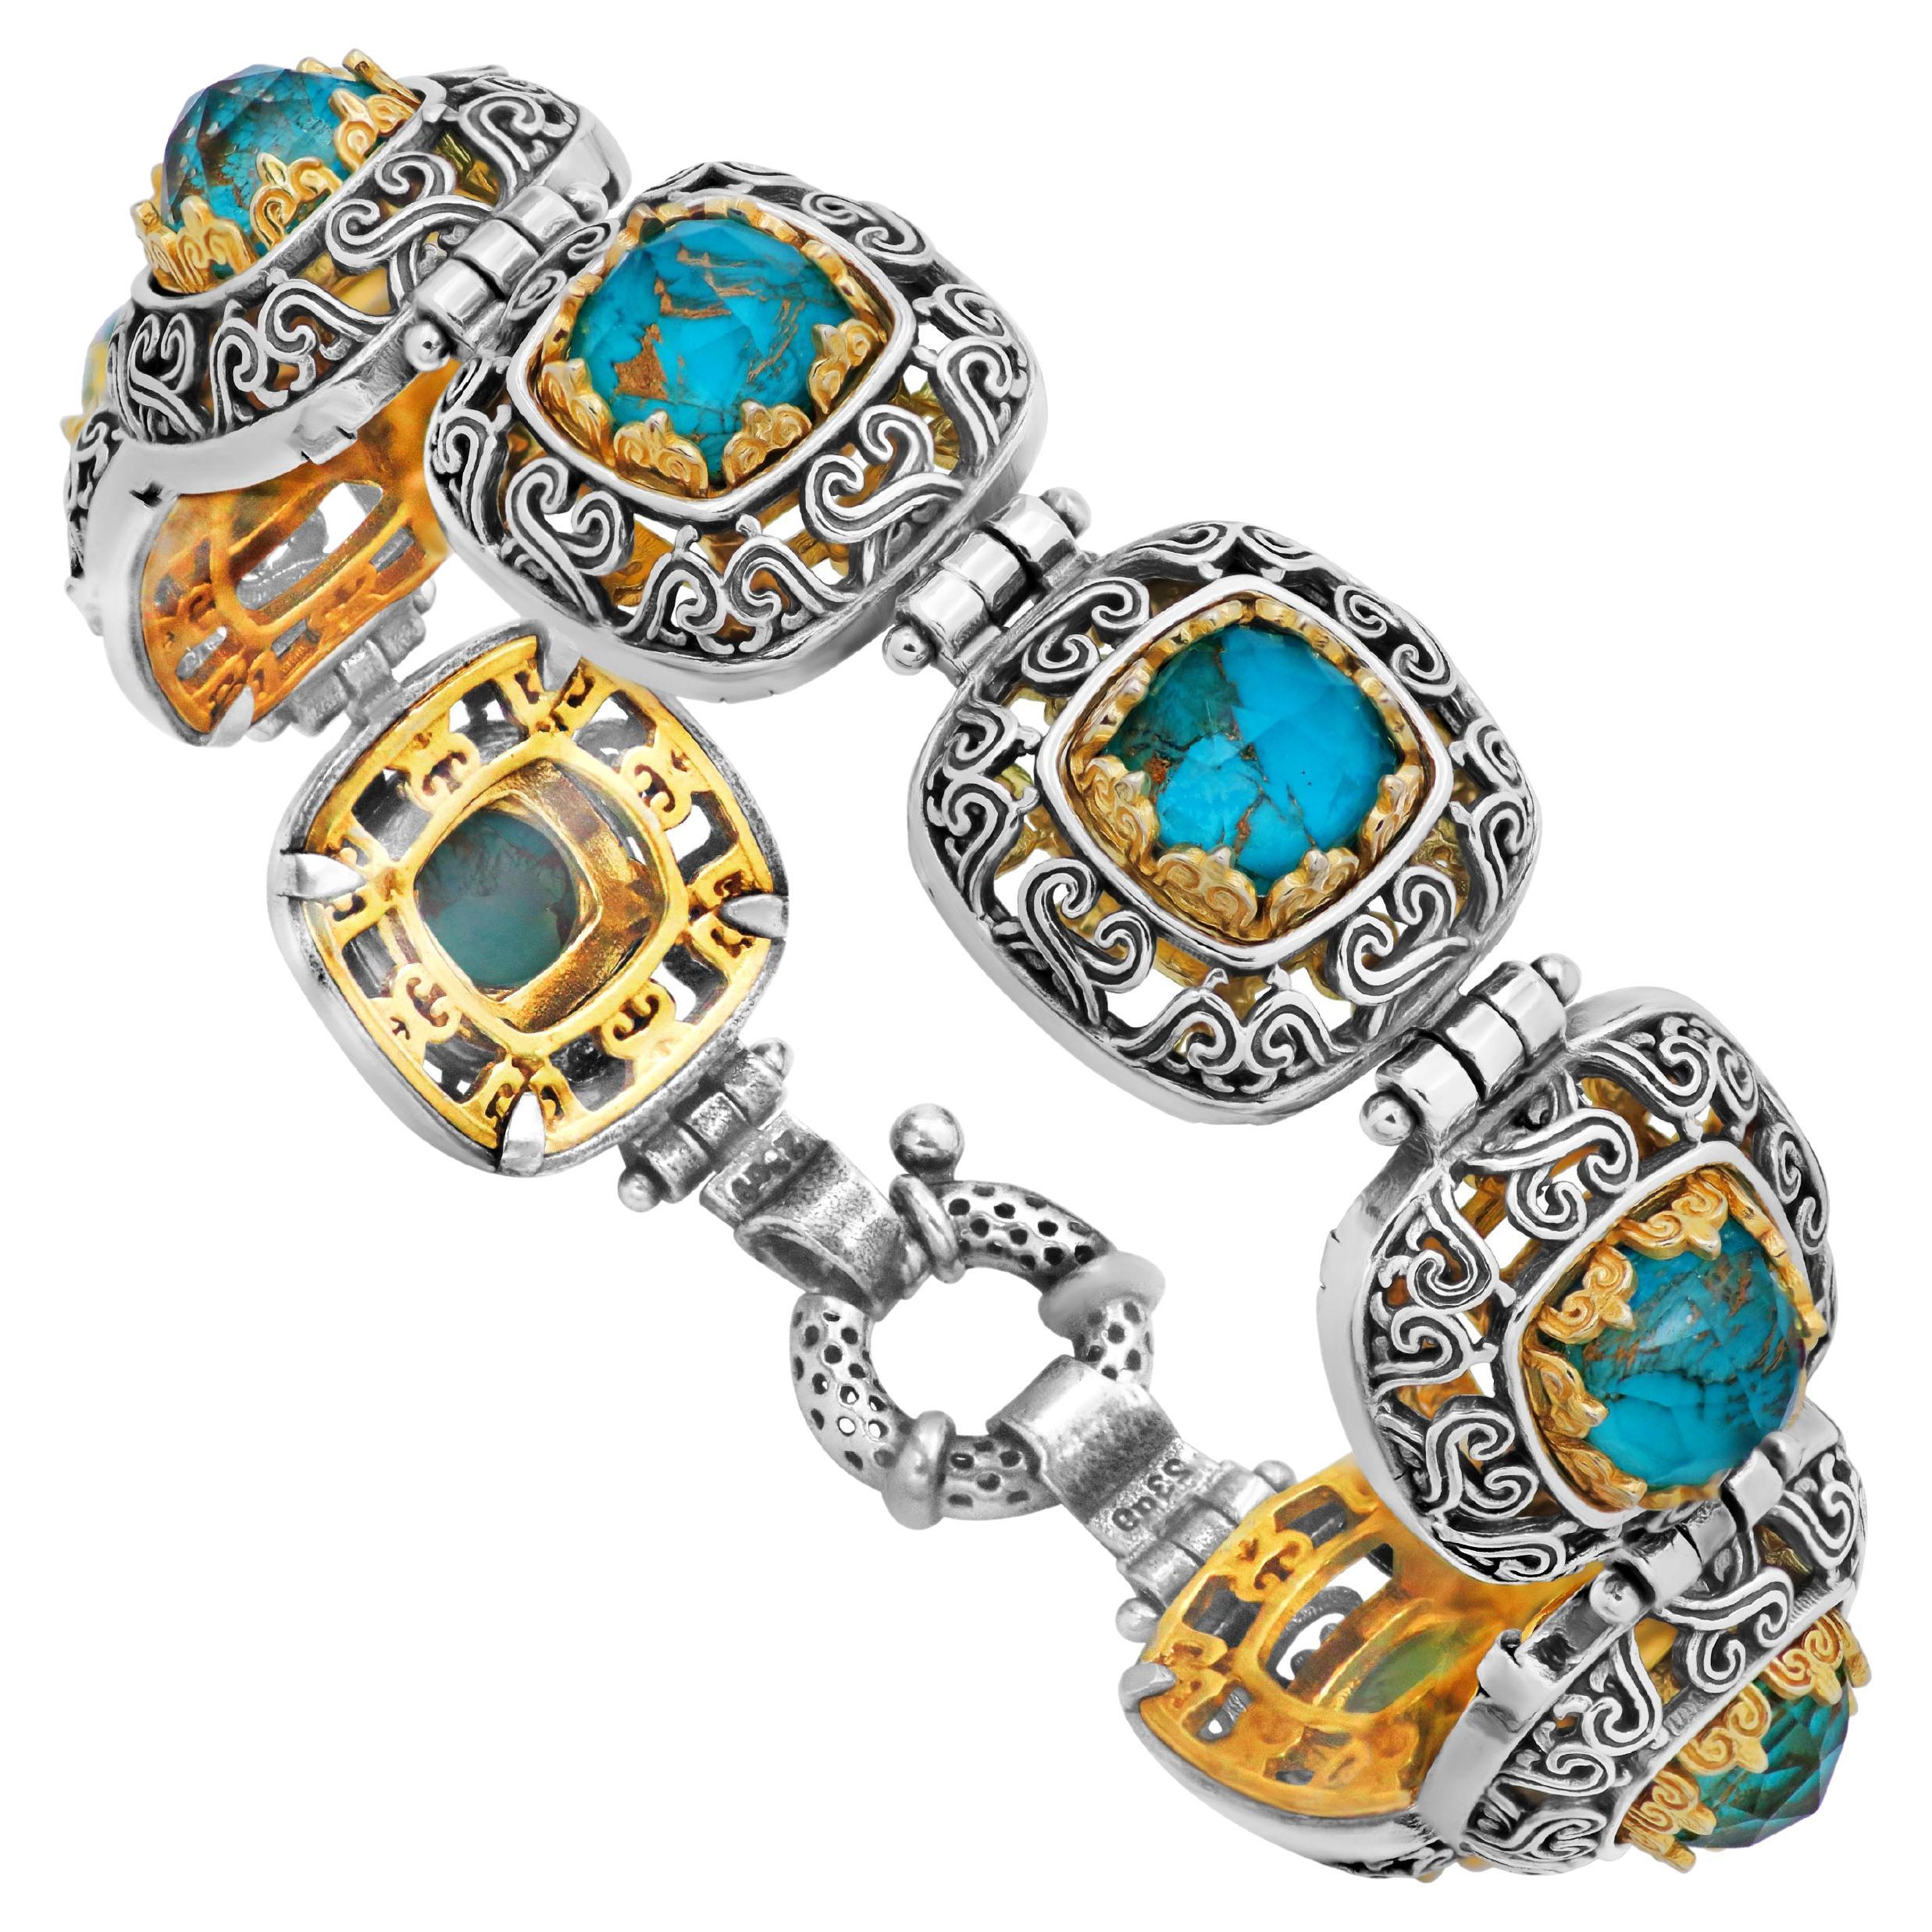 Byzantine More Bracelets